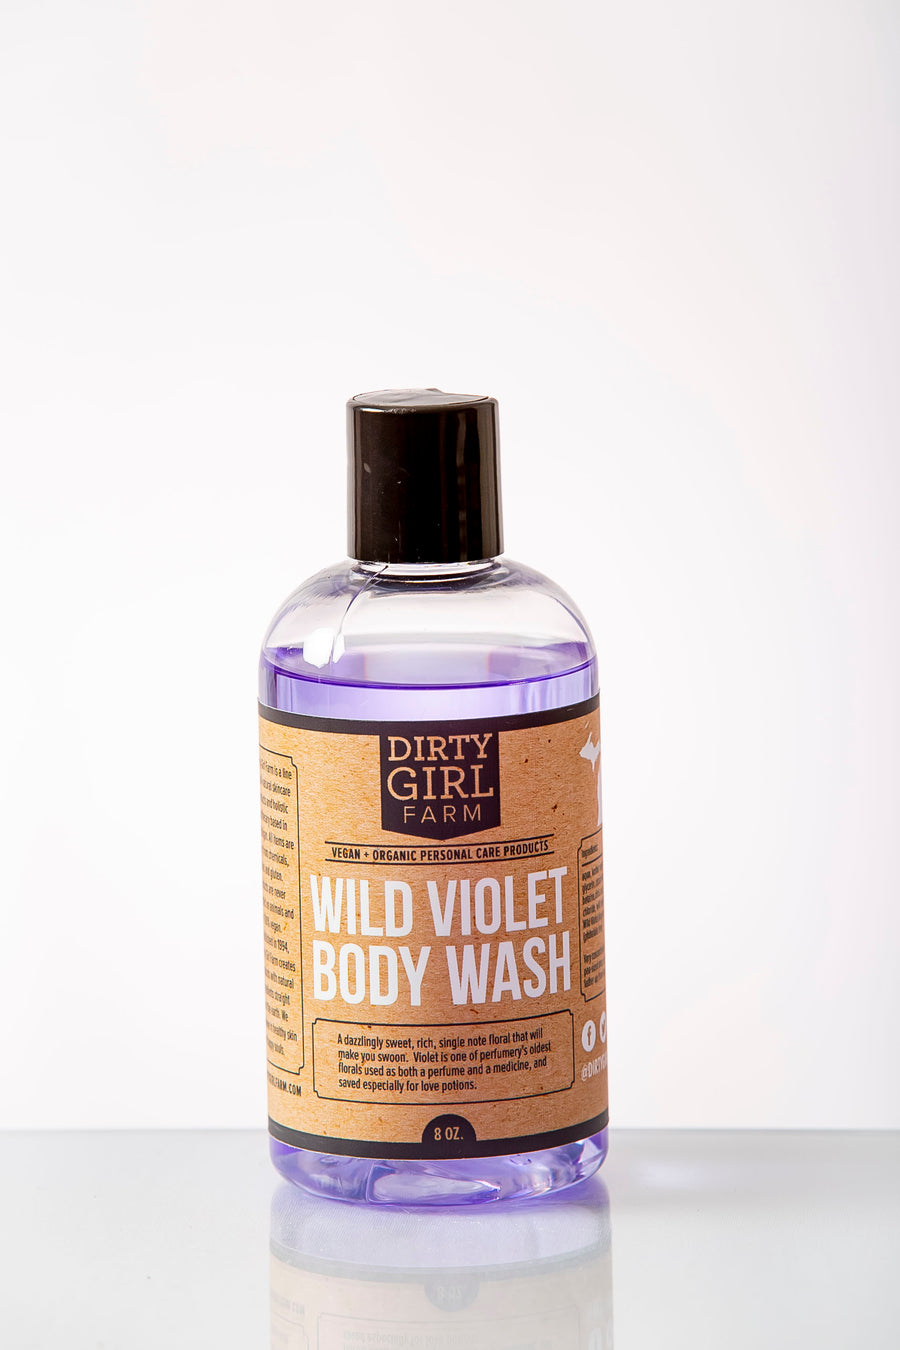 Dirty Girl Farm Wild Violet Body Wash